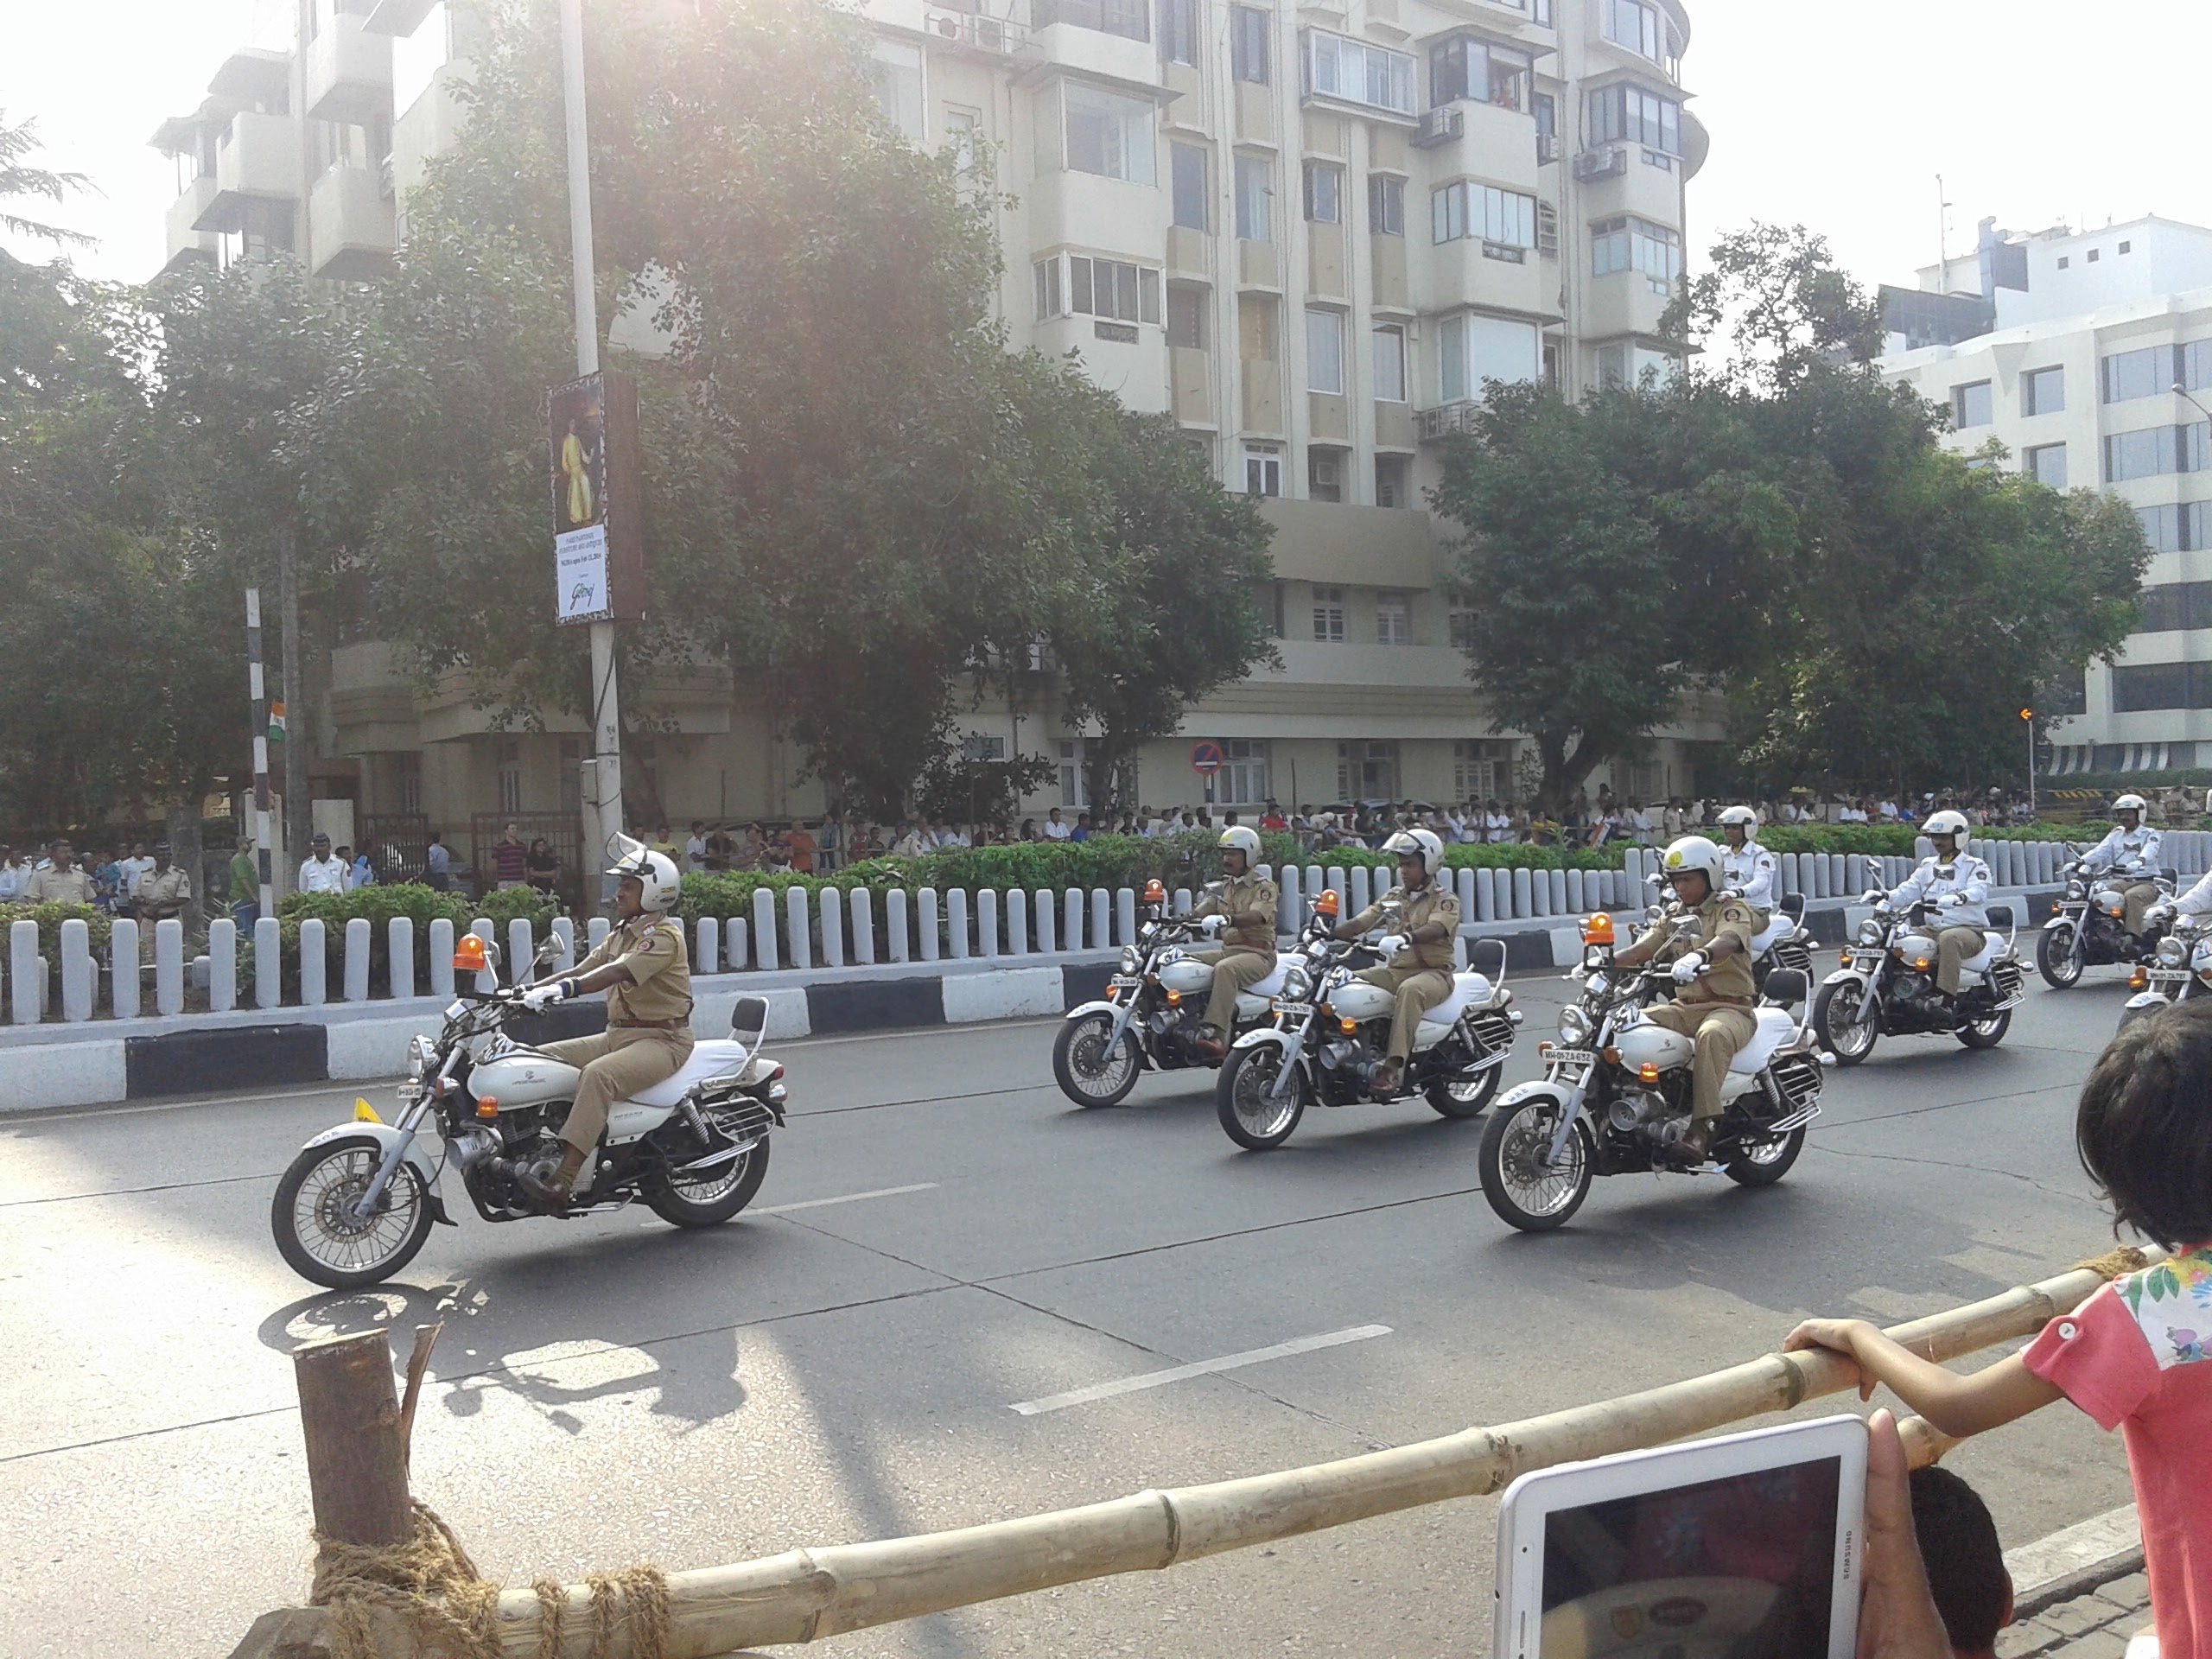 Mumbai_police.jpg